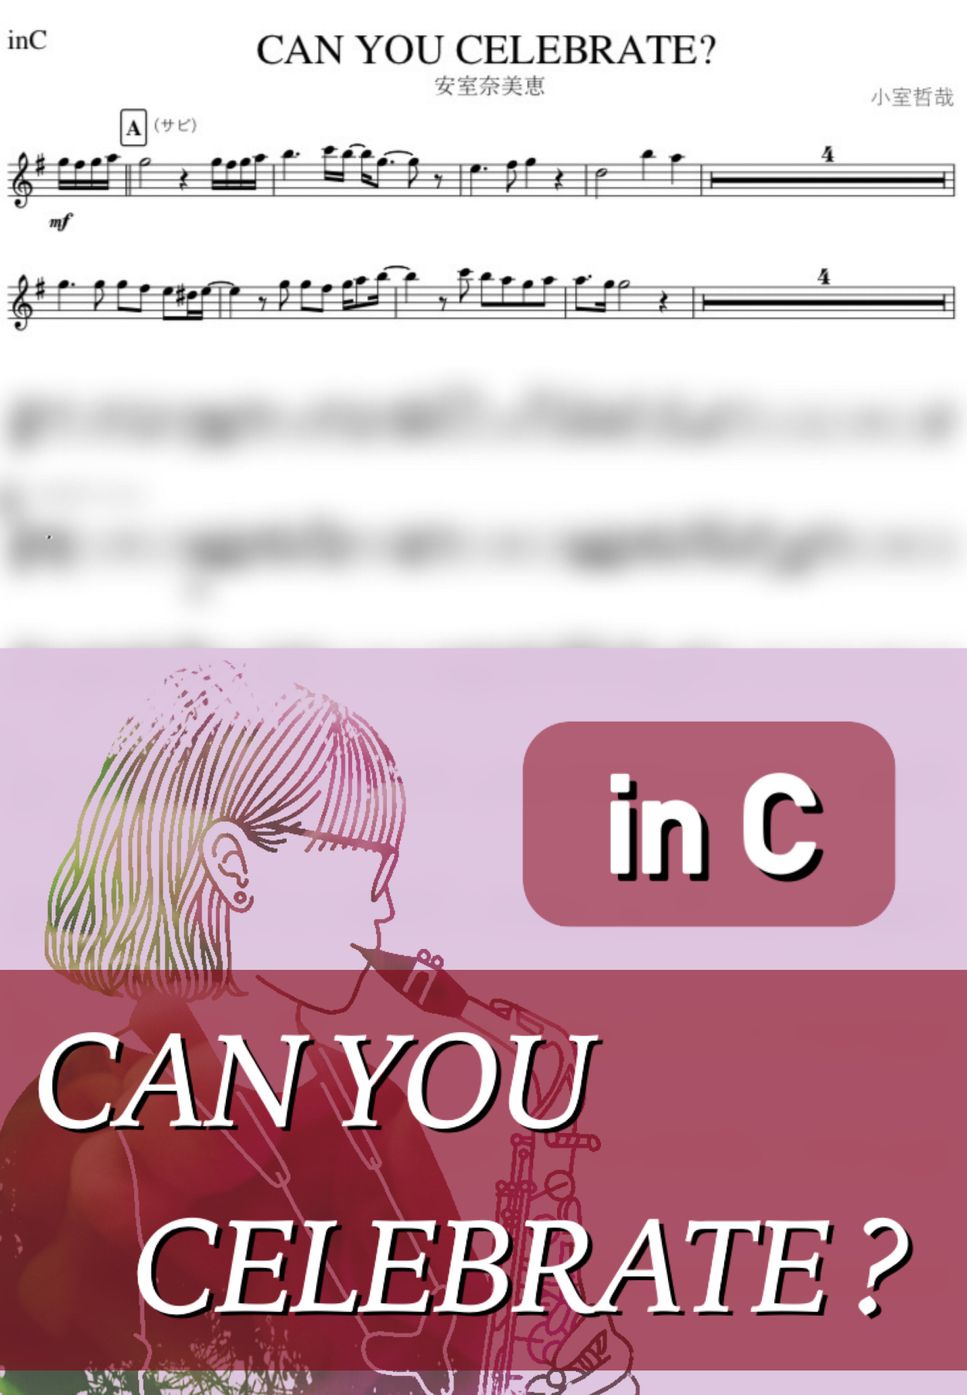 安室奈美恵 - CAN YOU CELEBRATE? (C) by kanamusic